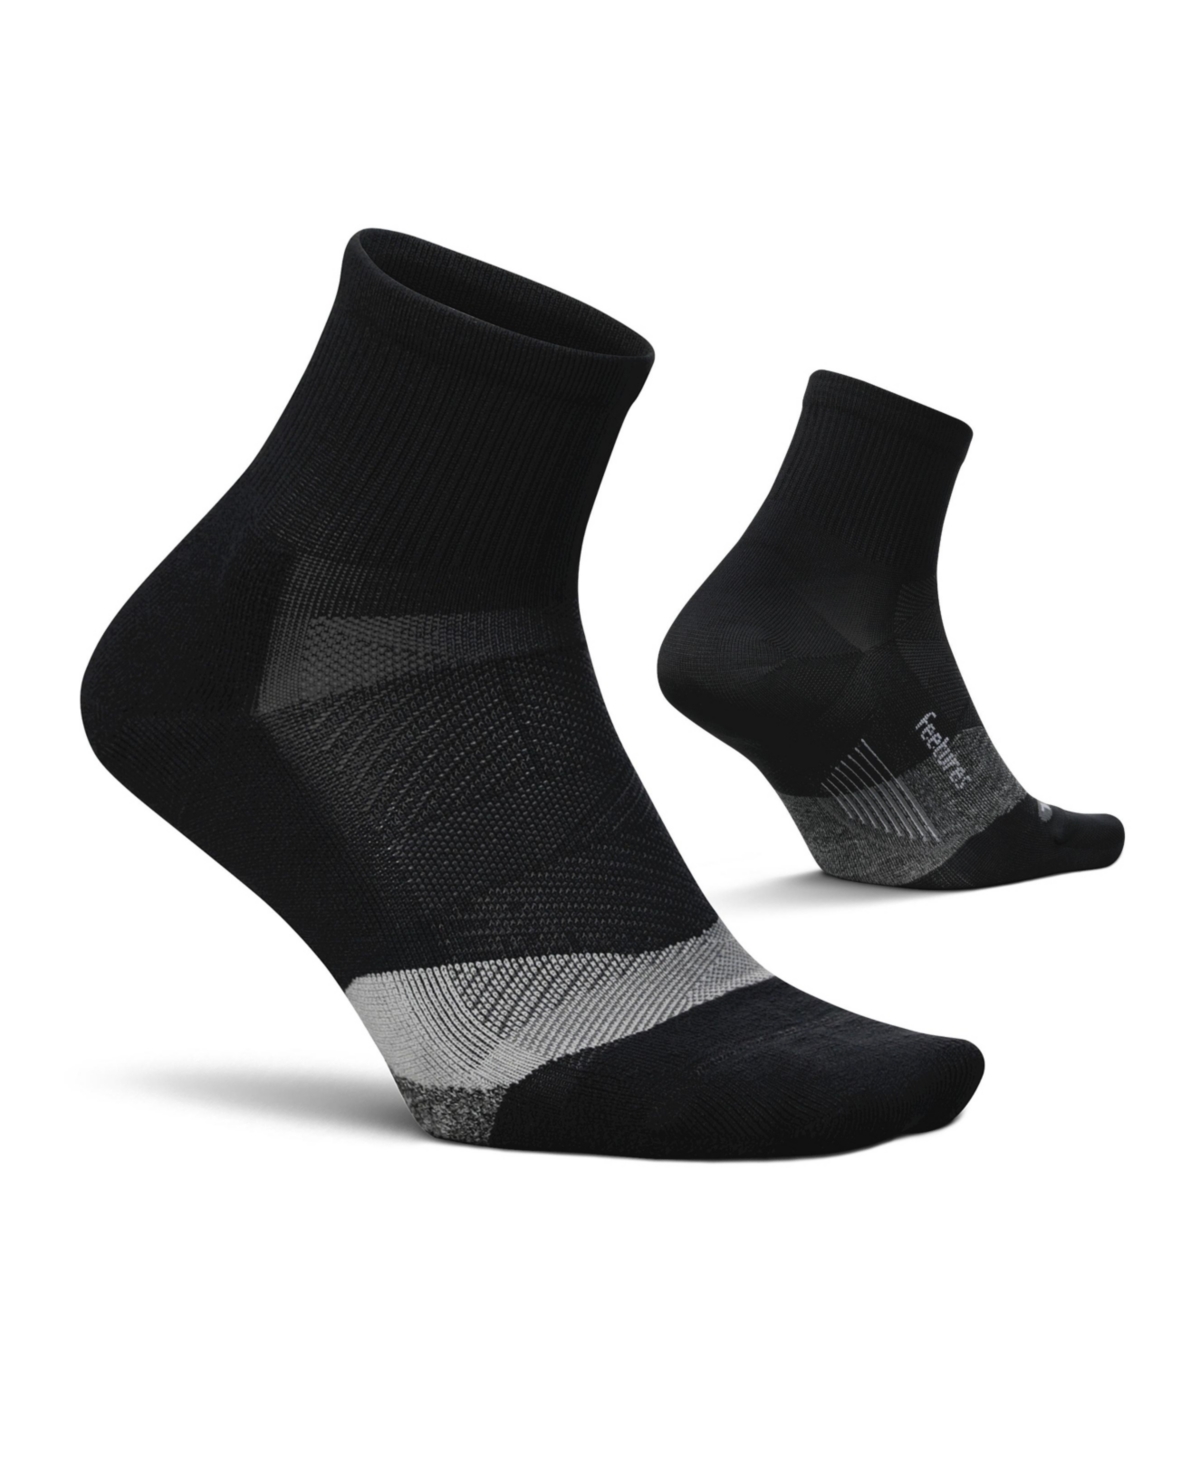 Men's Elite Light Cushion Quarter Solid - Sport Sock with Targeted Compression - New Black - Black